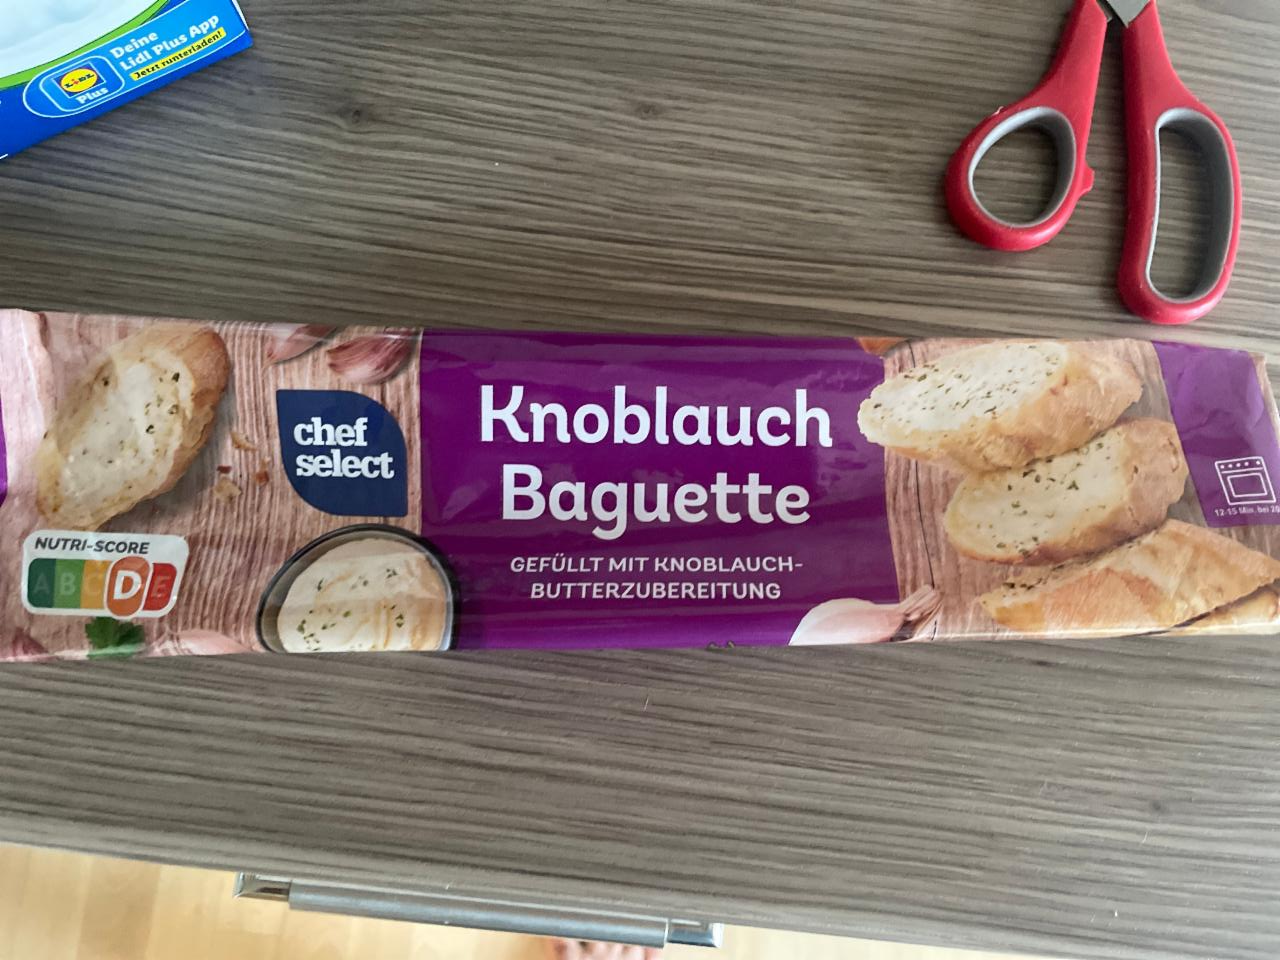 Chef Select калорийность, Knolauch - ⋙ Baguette ценность пищевая